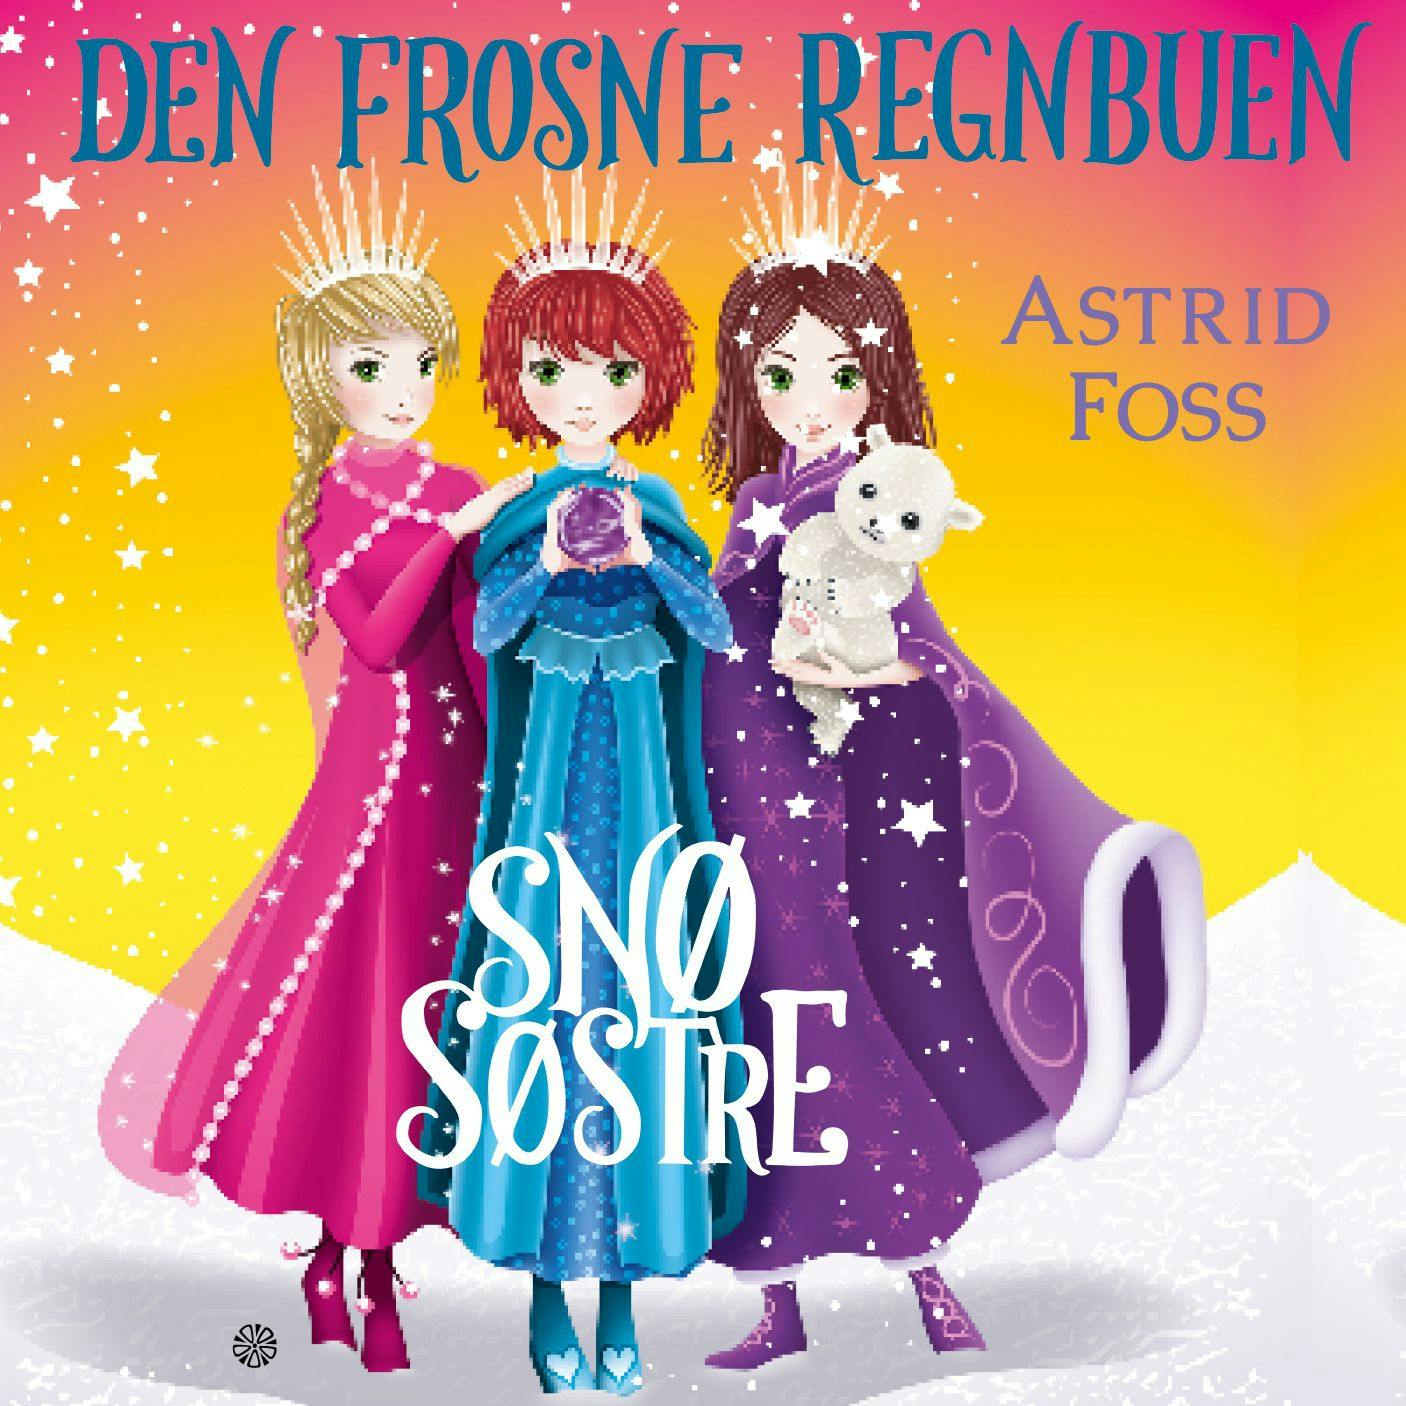 Den frosne regnbuen - Astrid Foss